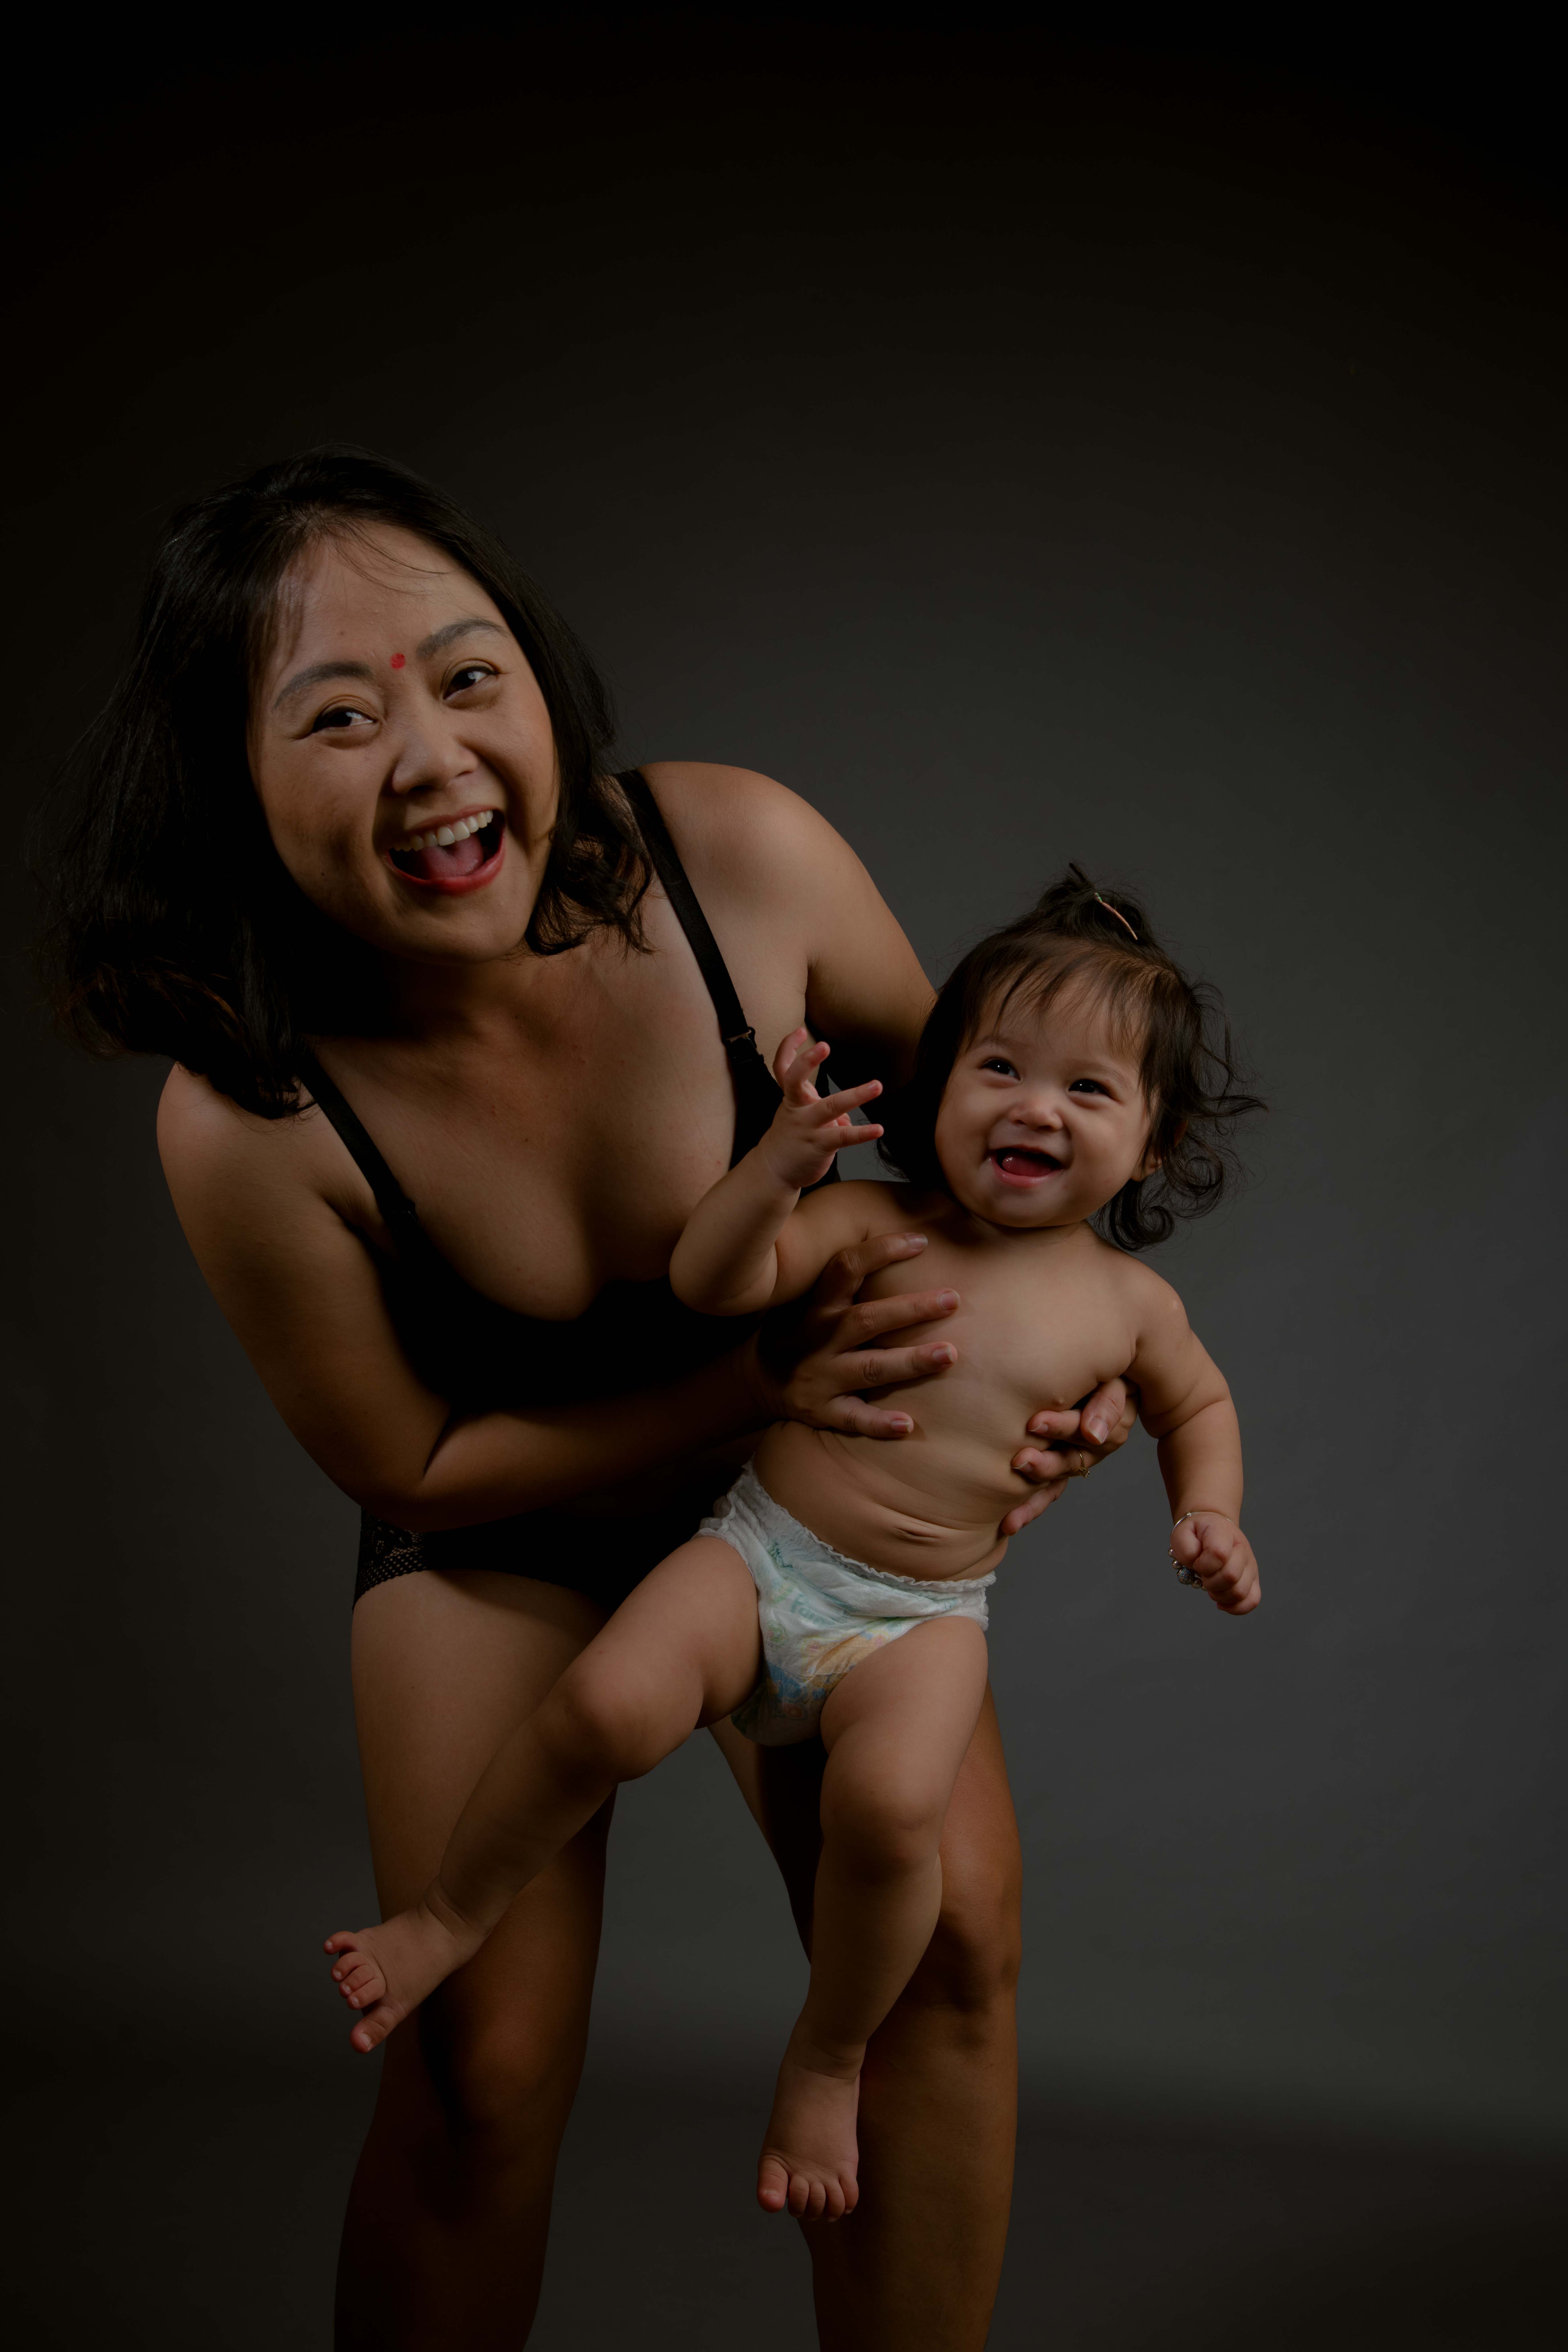 Dự án #LoveYourBody công bố bộ ảnh “Những Hi sinh và Hạnh phúc của Mẹ” nhân ngày 20/10